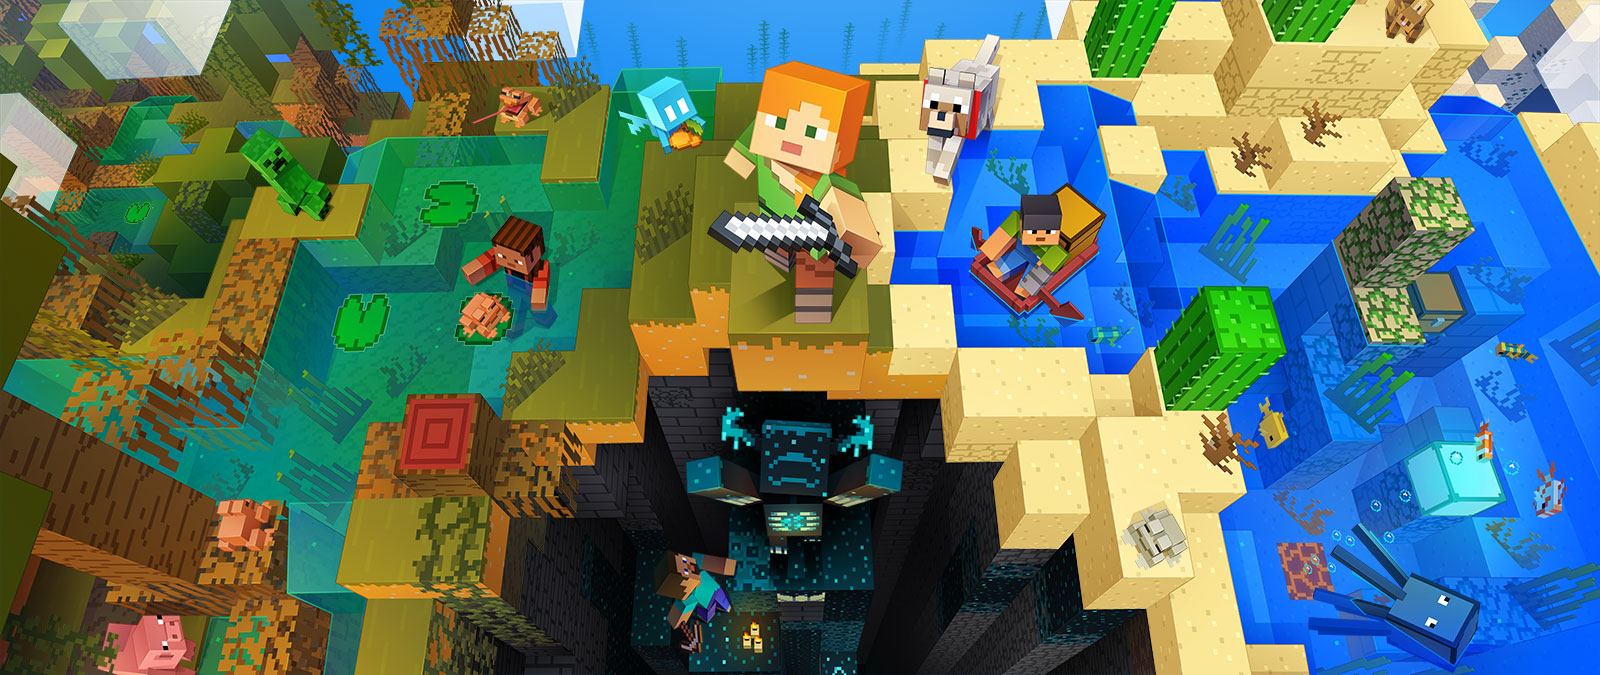 Charaktere aus Minecraft bei verschiedenen Aktivitäten in Minecraft